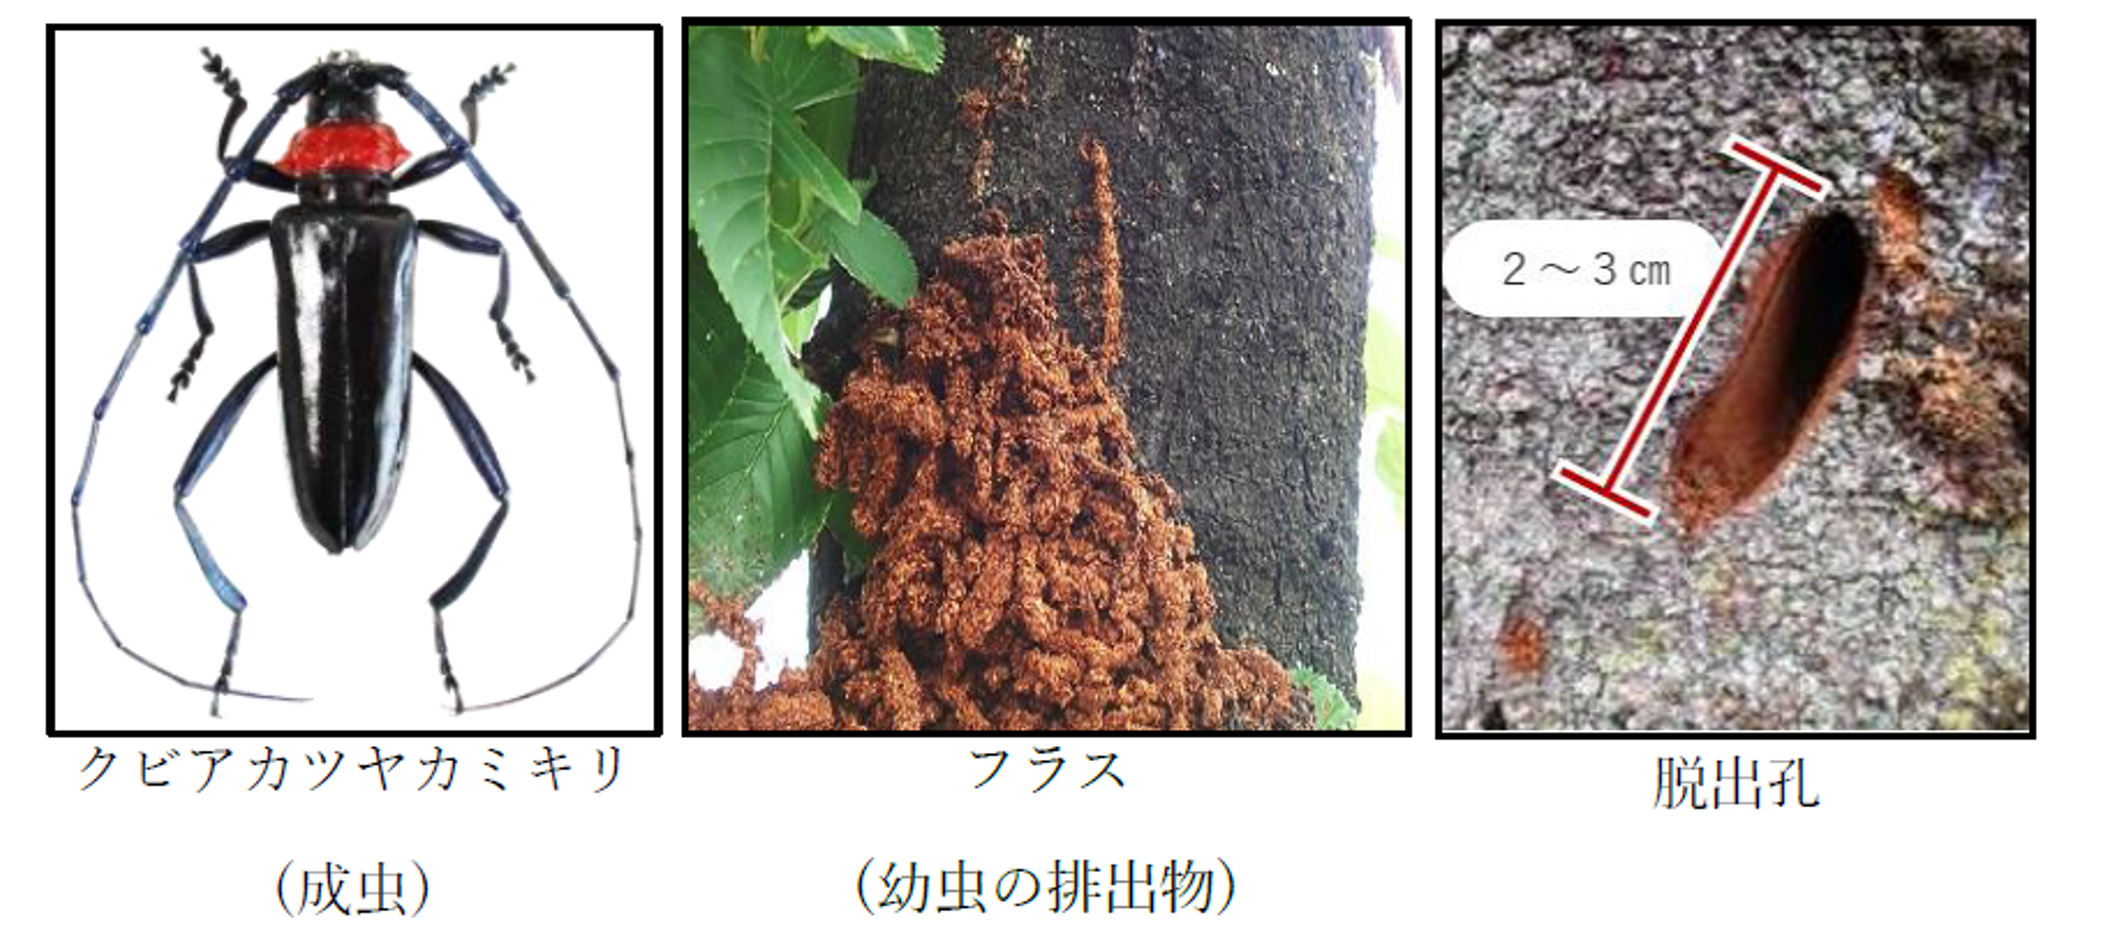 左からクビアカツヤカミキリの成虫、フラス（幼虫の排出物）、脱出孔の写真